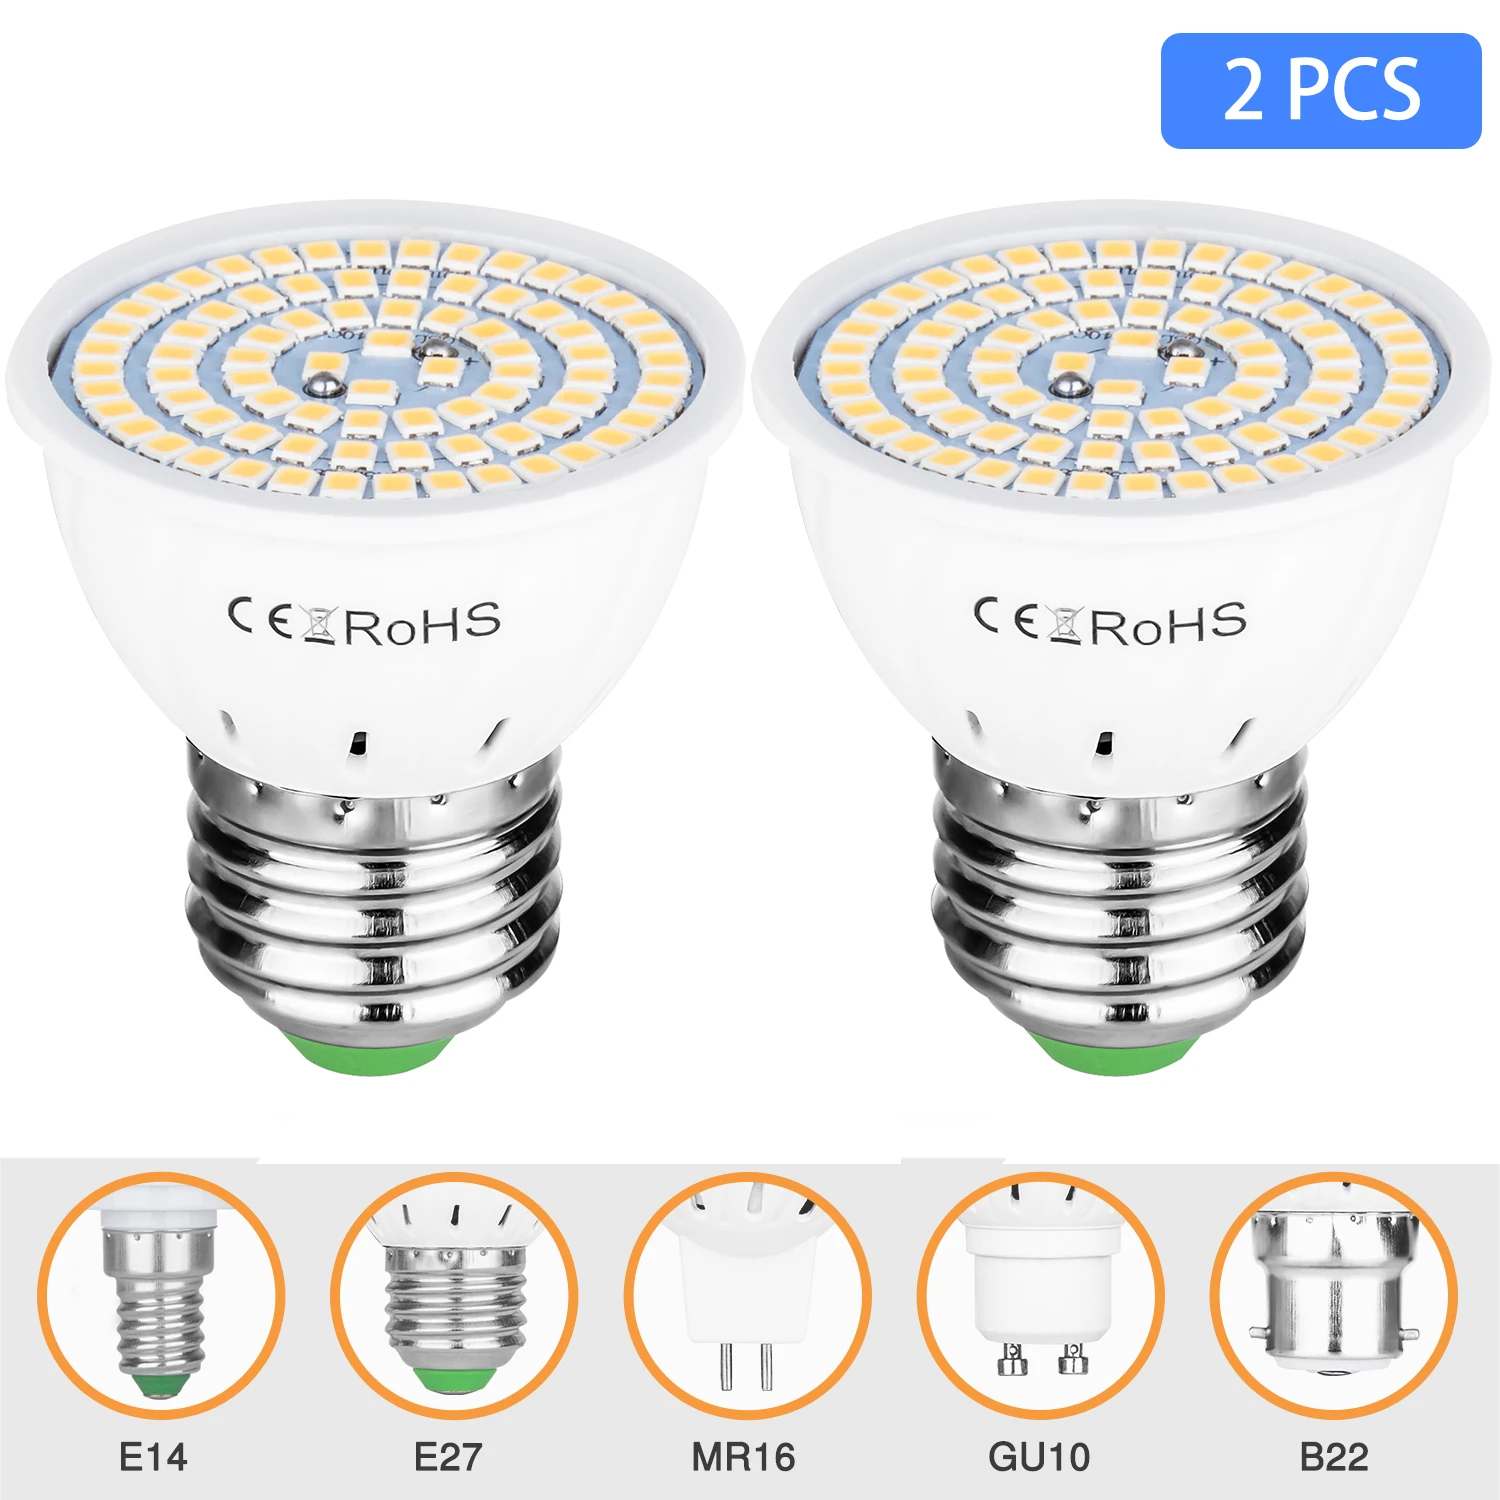 

2 PCS LED Spotlight Bulb E27 E14 MR16 GU10 B22 220V Bombillas LED Lamp 48 60 80 LED 2835 SMD Lampara Spot Light 5w 7w 9w